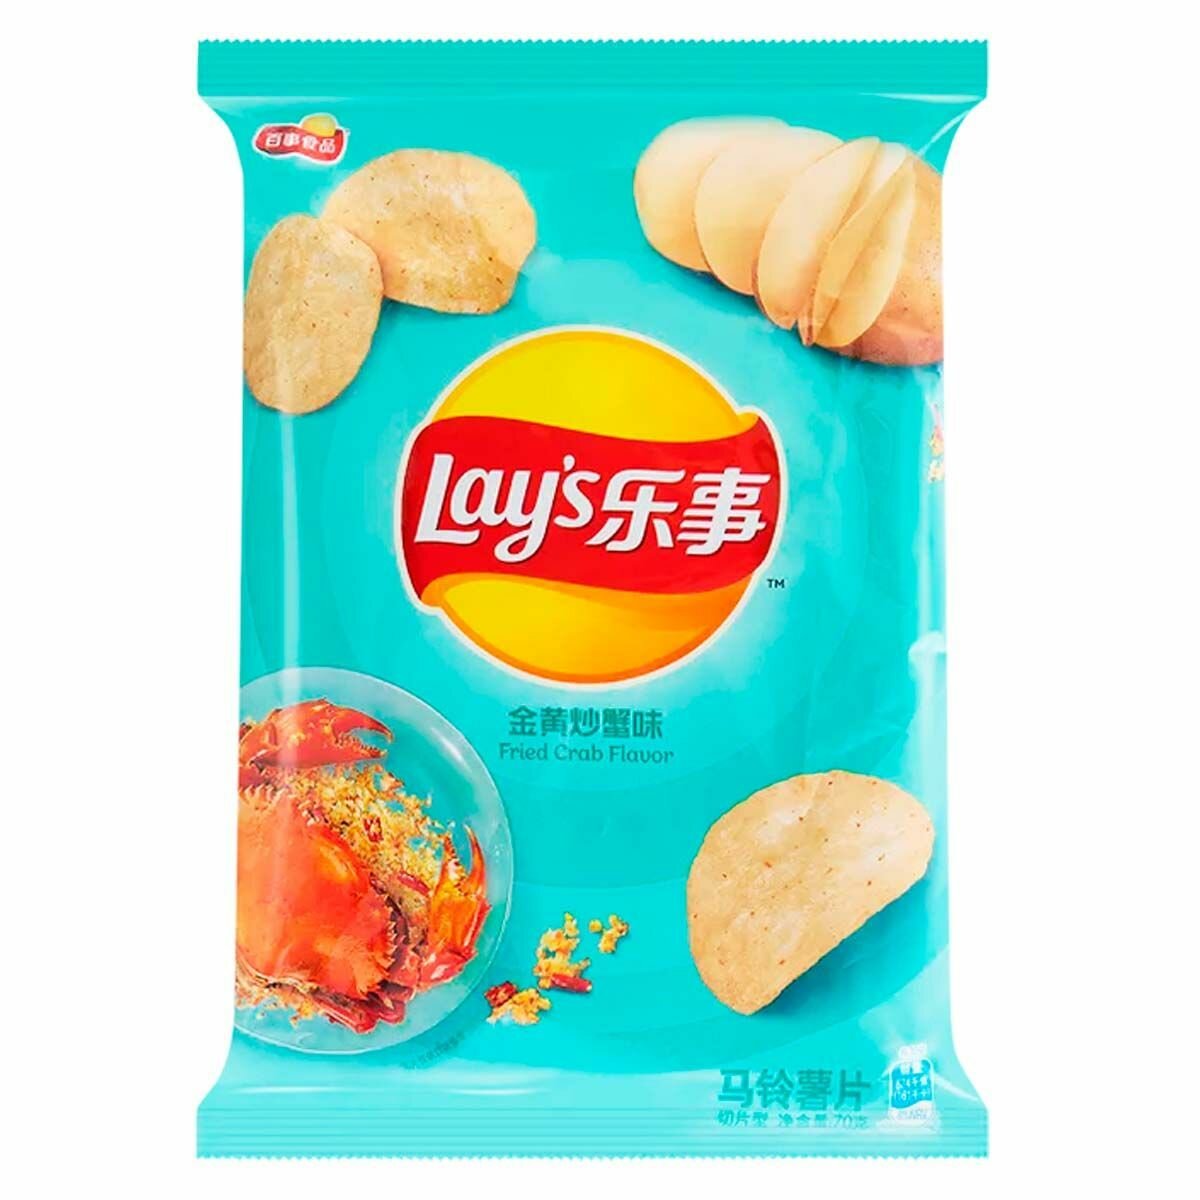 Картофельные чипсы Lay's Fried Crab Flavor со вкусом жареного краба (Китай), 70 г